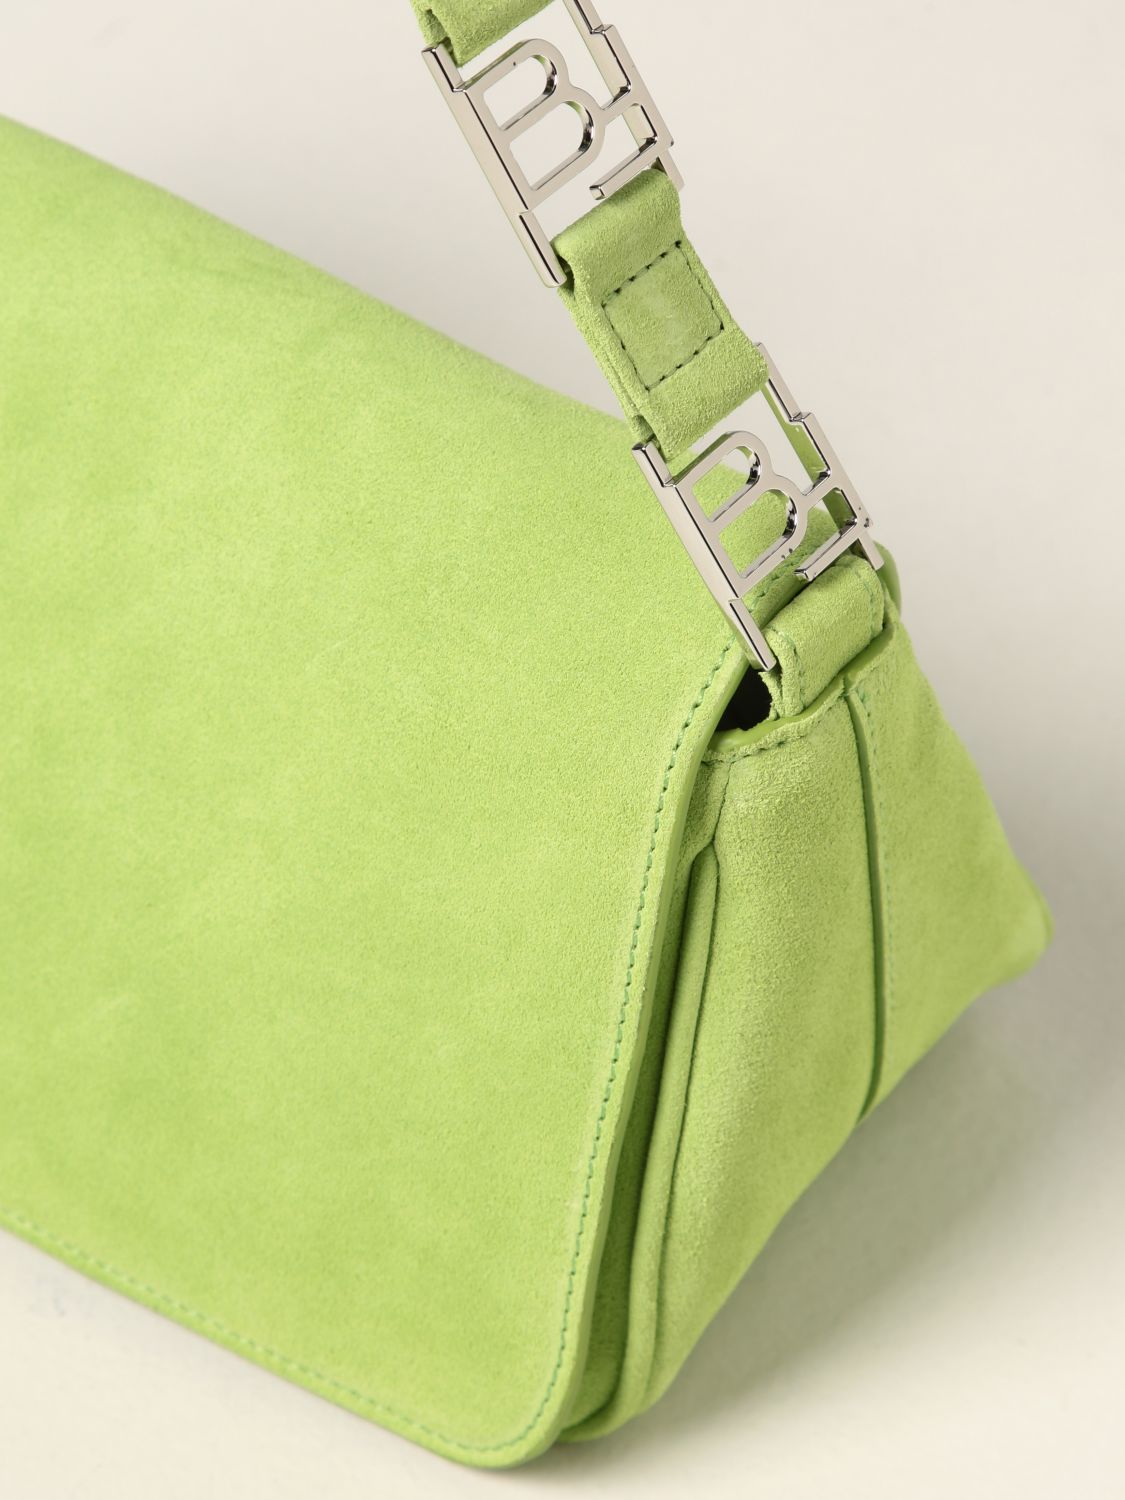 Handbag By Far: Daisy By Far bag in suede green 4